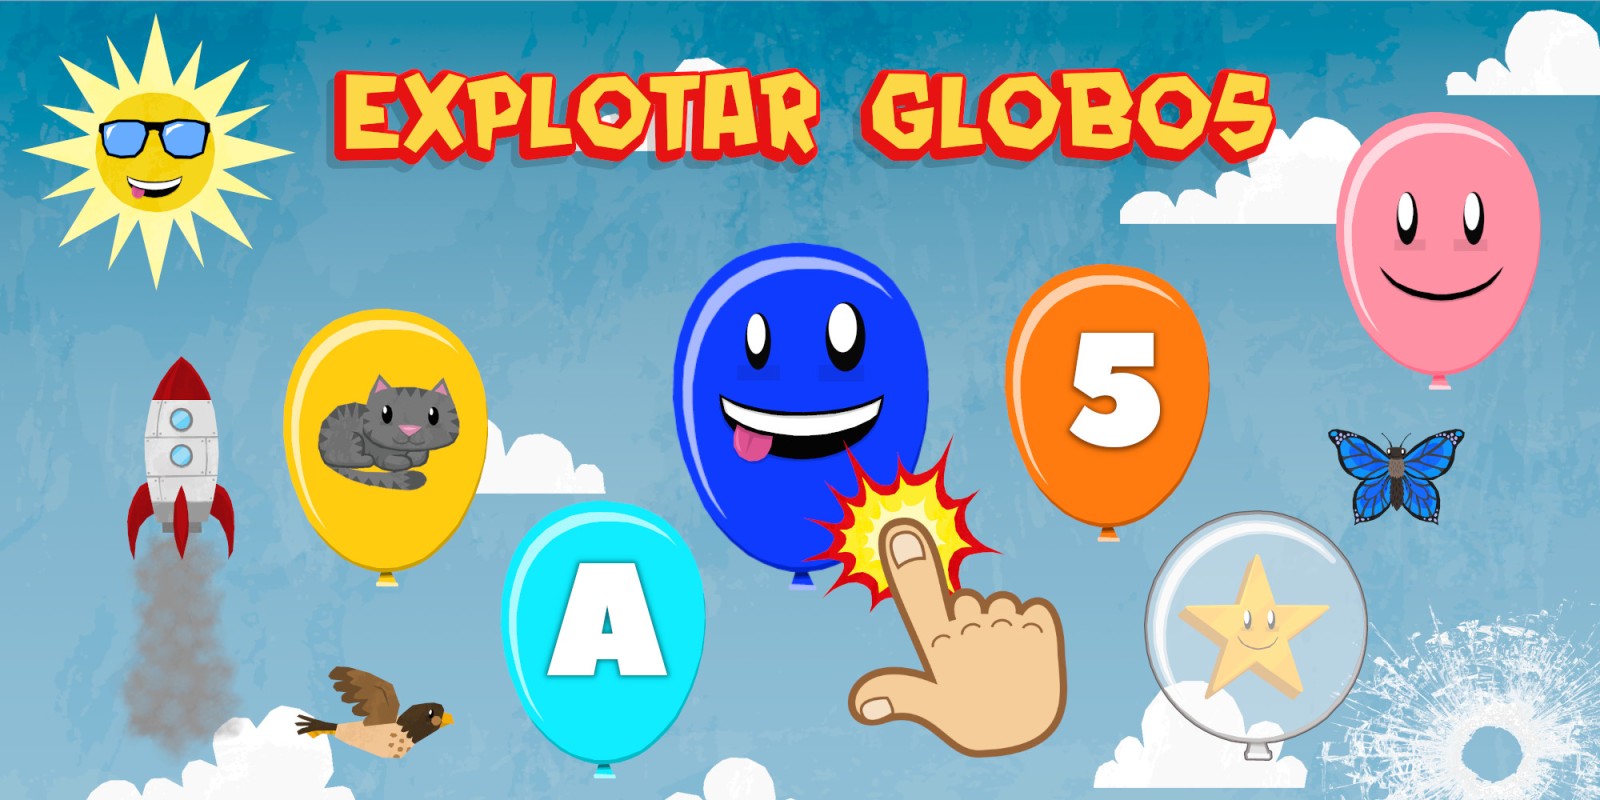 Explotar Globos para niños pequeños - Aprende letras, números, colores y animales